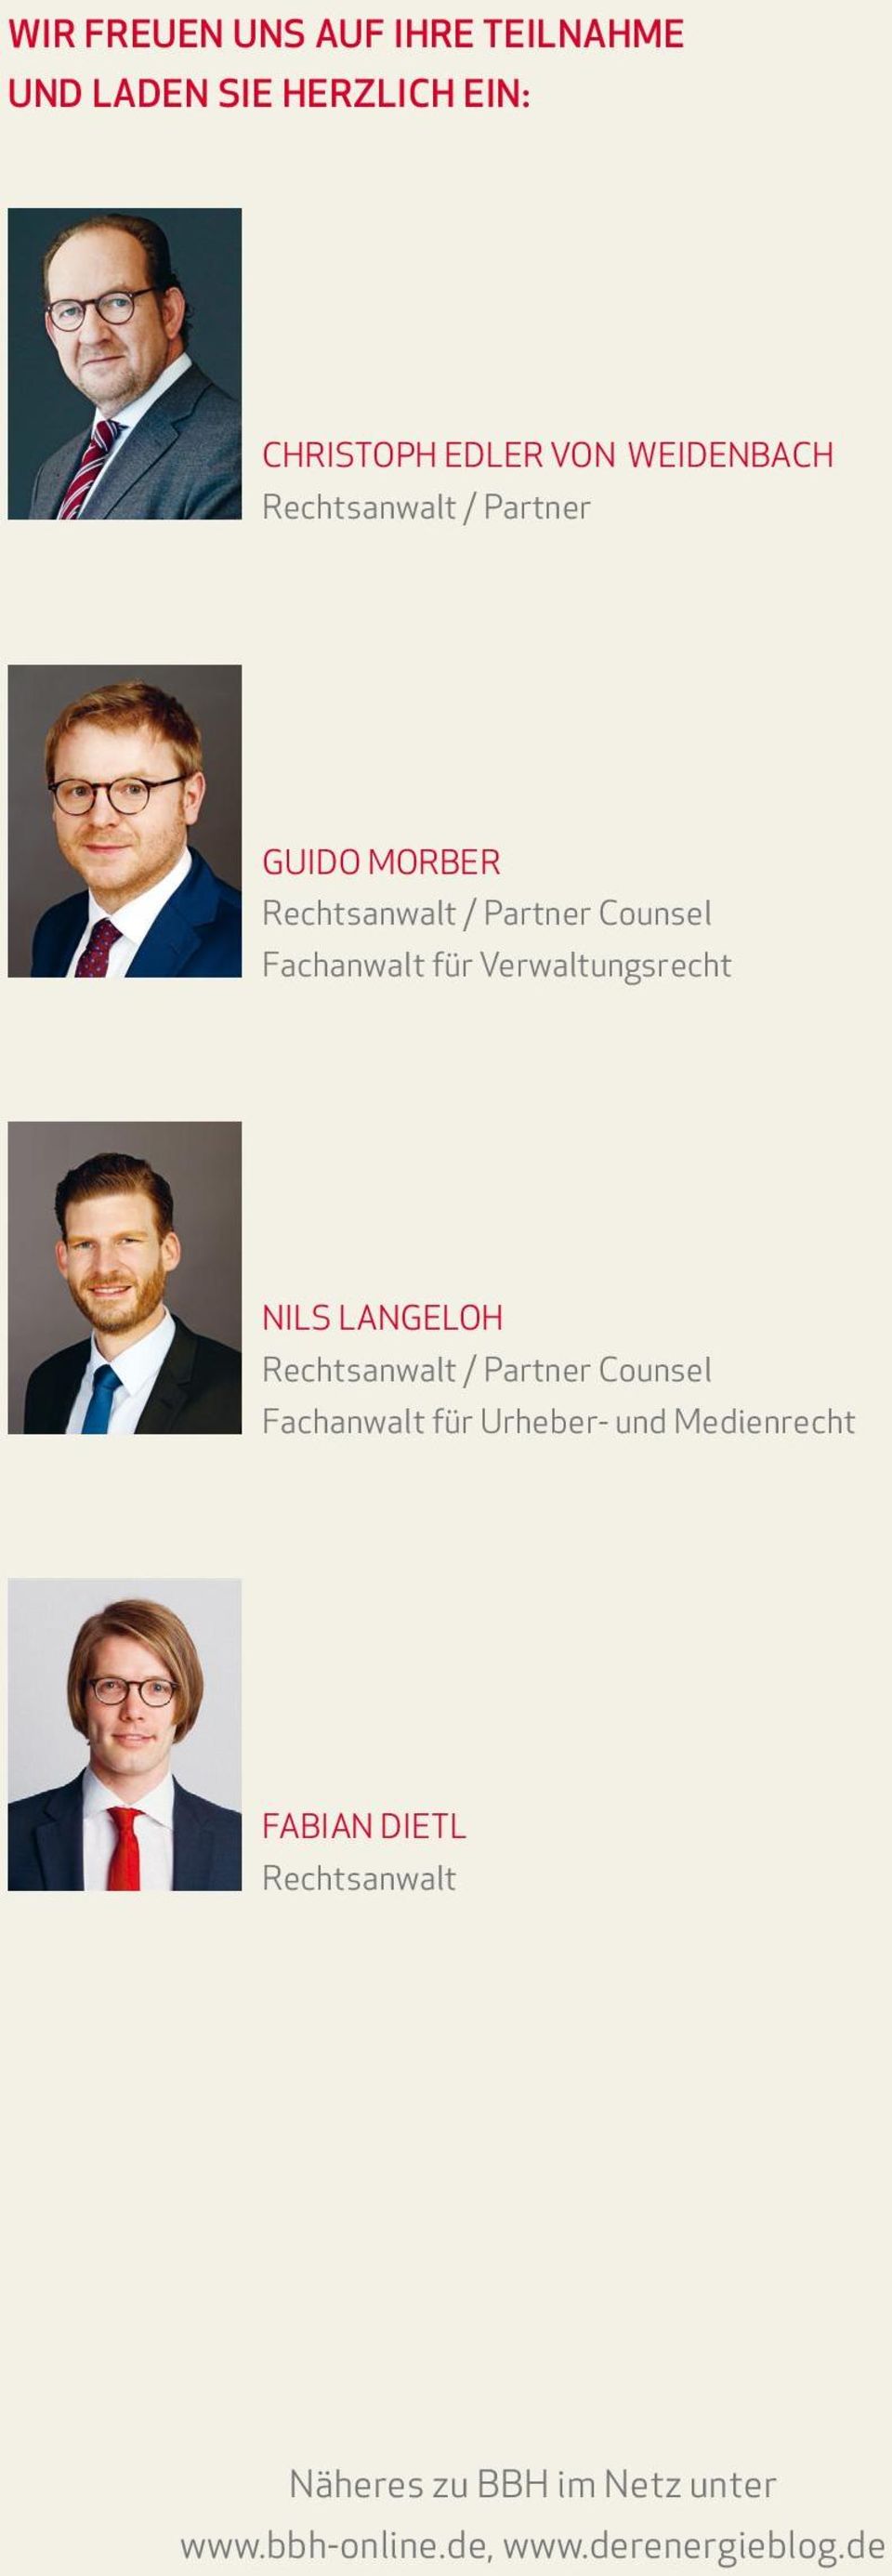 Verwaltungsrecht nils langeloh Rechtsanwalt / Partner Counsel Fachanwalt für Urheber- und